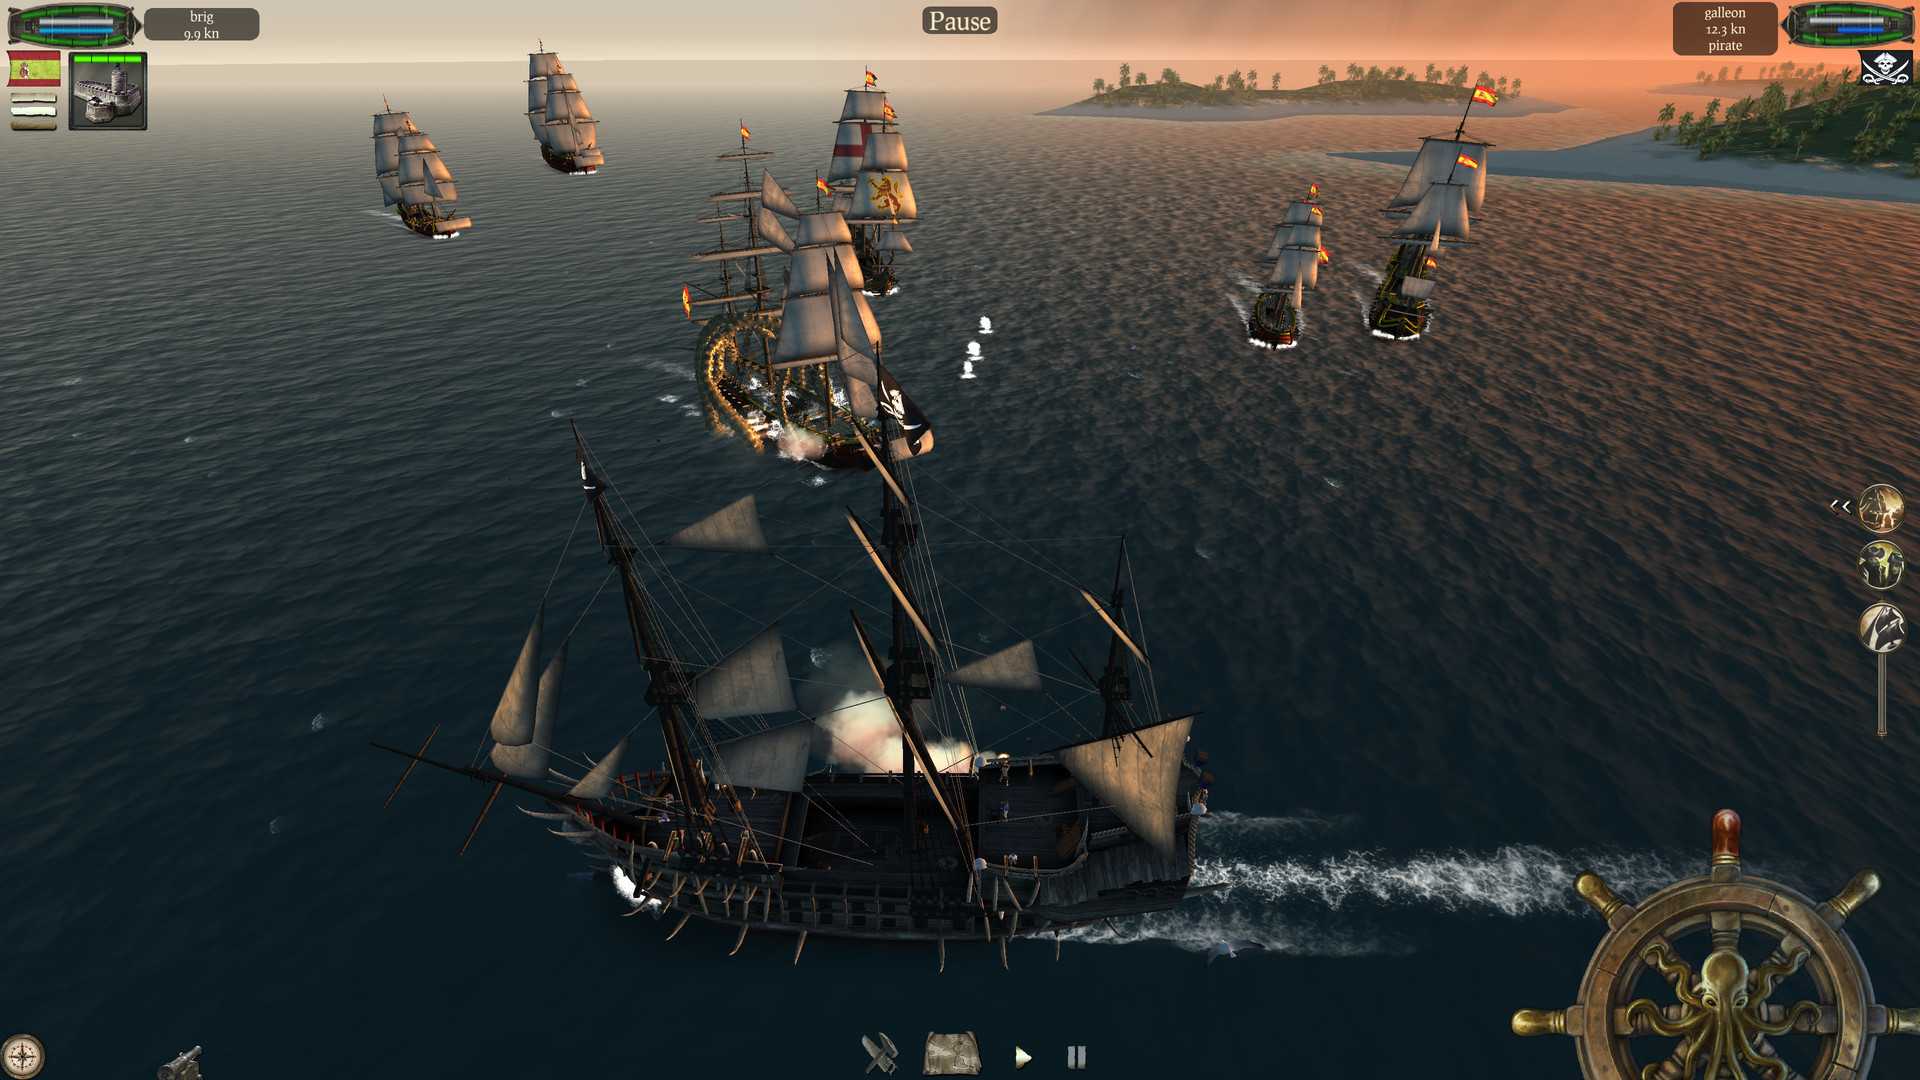 Скачать бесплатно игру the pirate plague of the dead на андроид